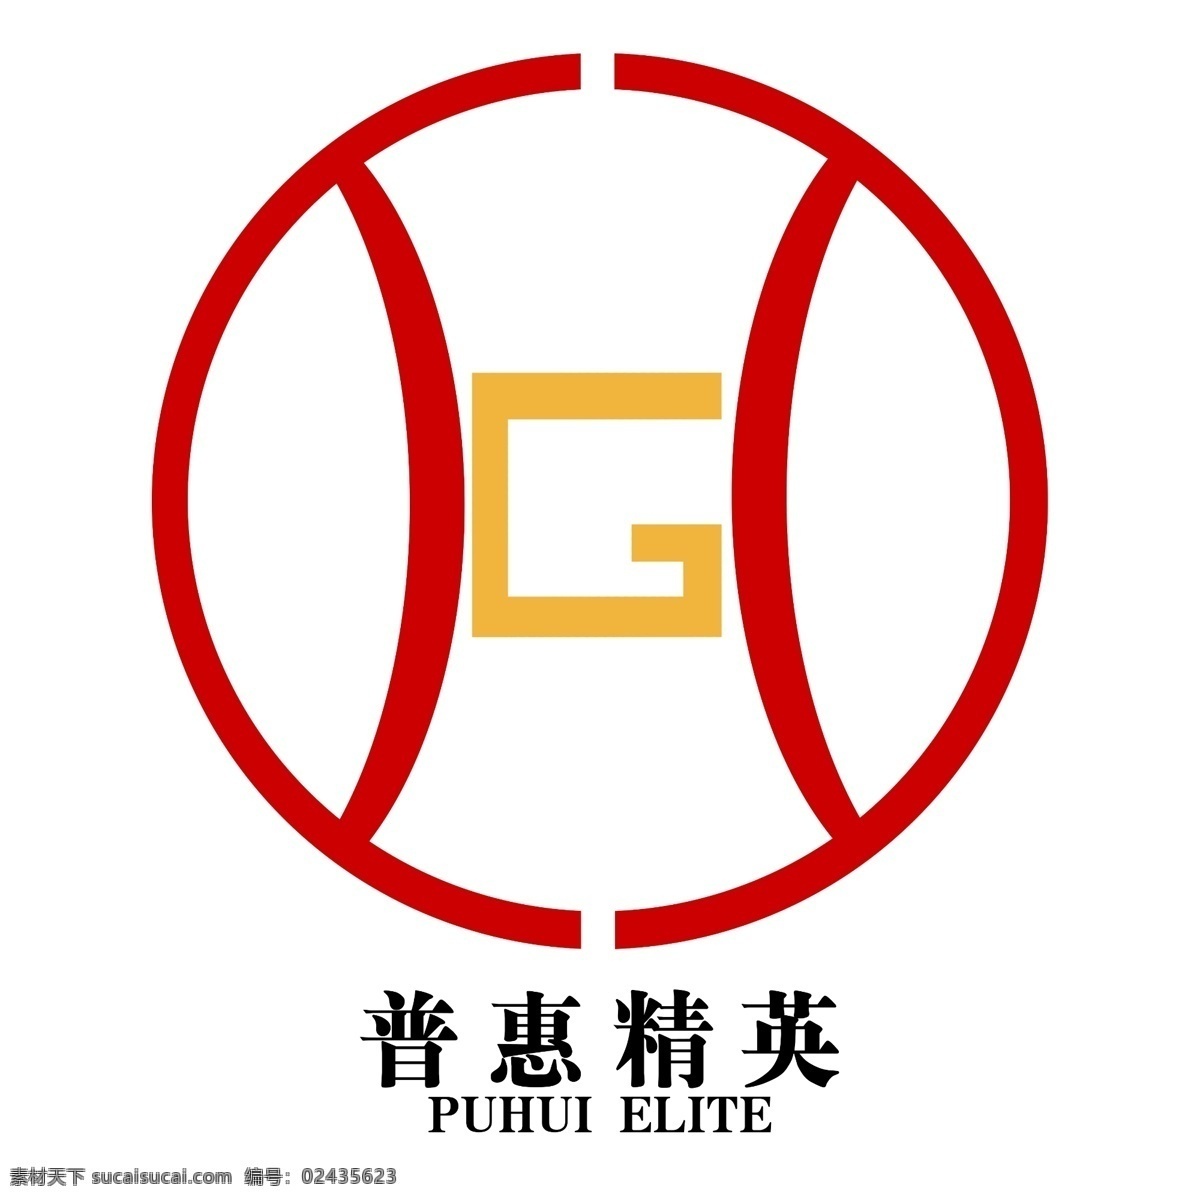 铜钱 形式 logo 铜钱形式 普惠精英 白色